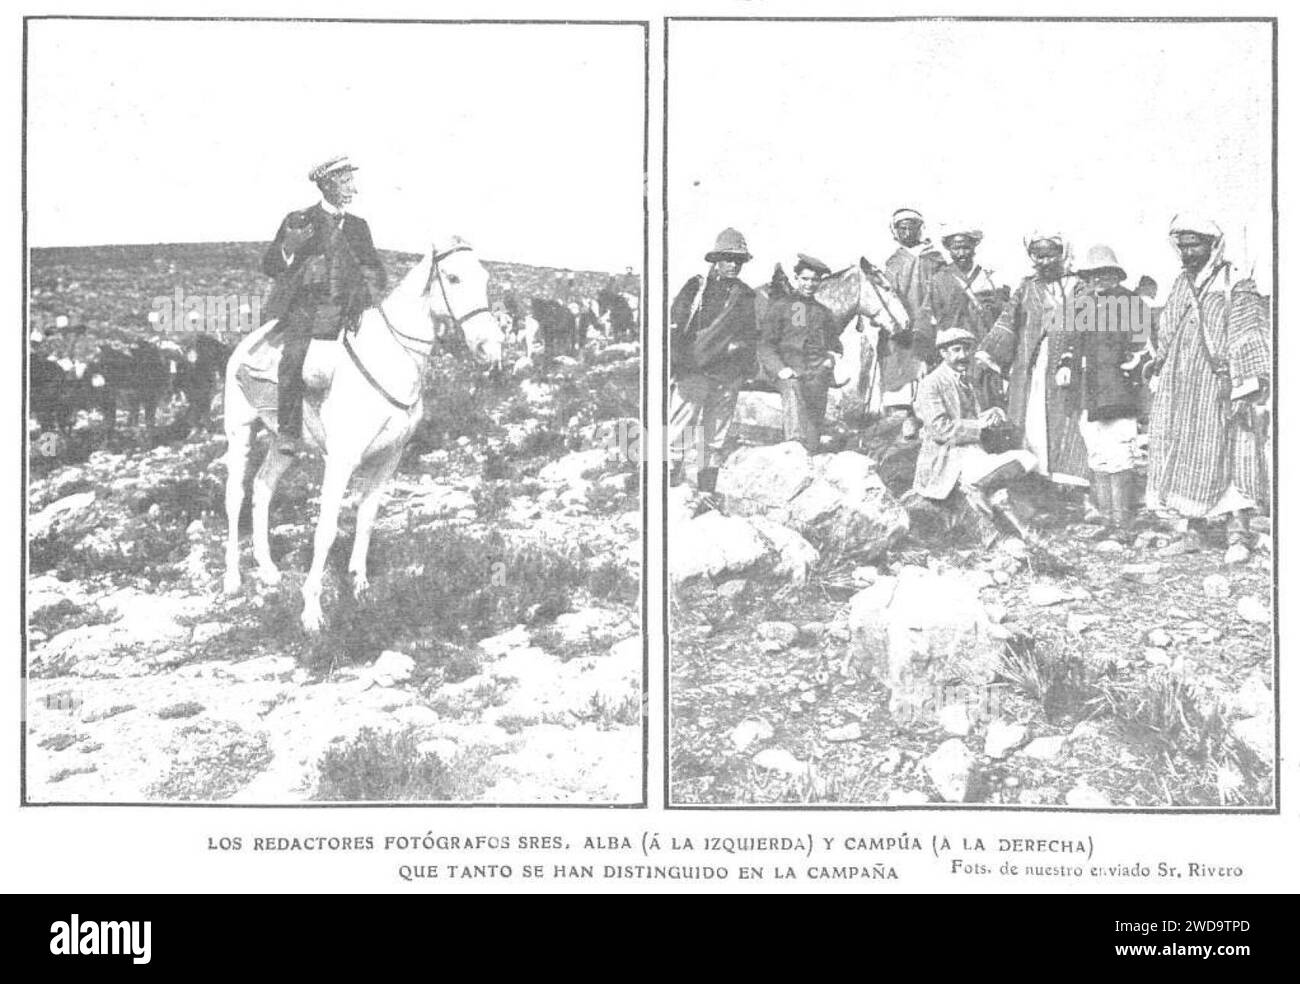 1909-11-17, Actualidades, Los redactores fotógrafos sres. Alba (a la izquierda) y Campúa (a la derecha) que tanto se han distinguido en la campaña, Rivero. Stock Photo